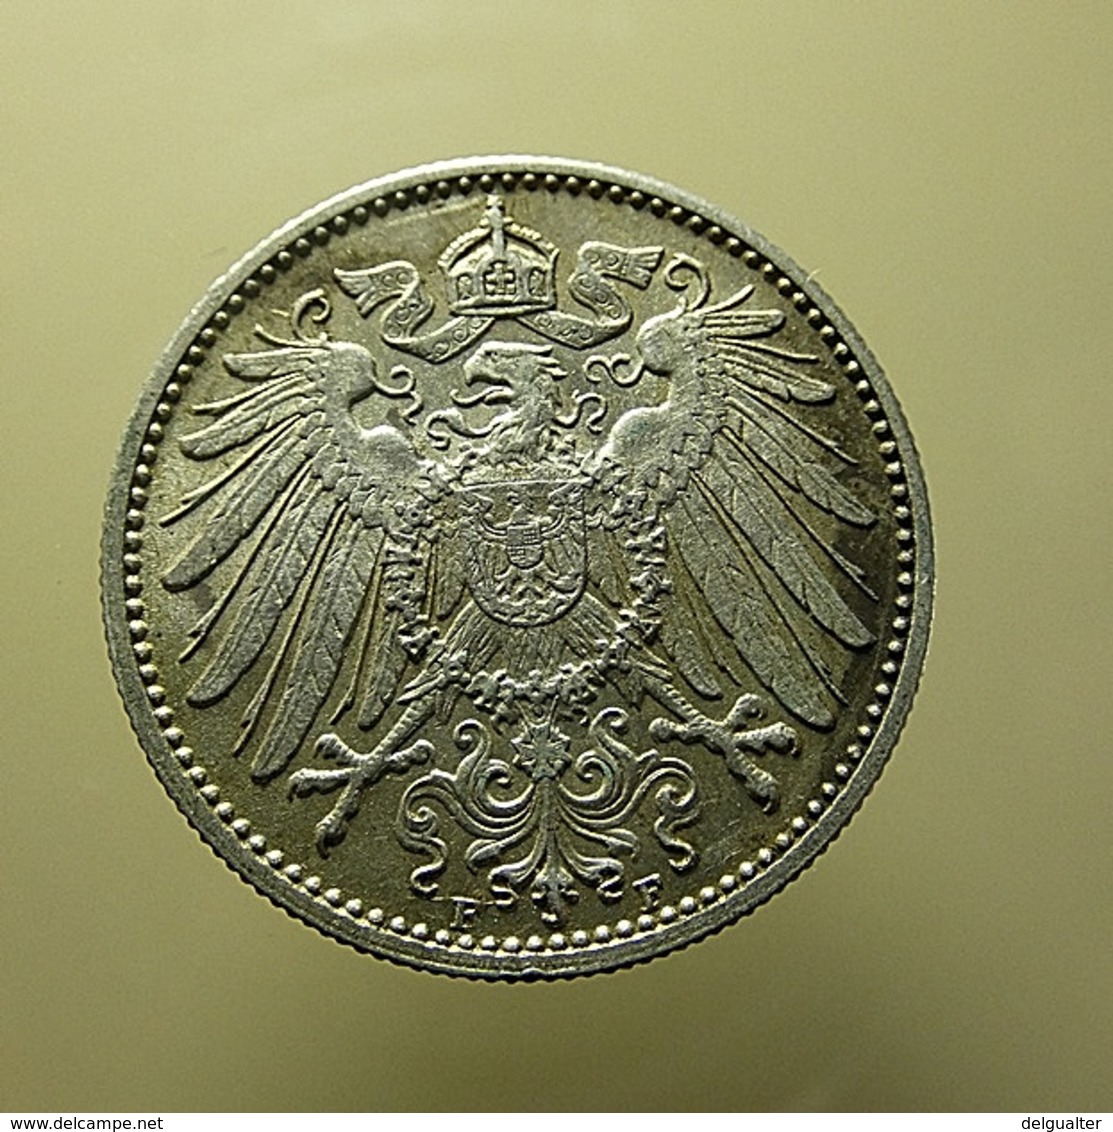 Germany 1 Mark 1914 F Silver - 1 Mark